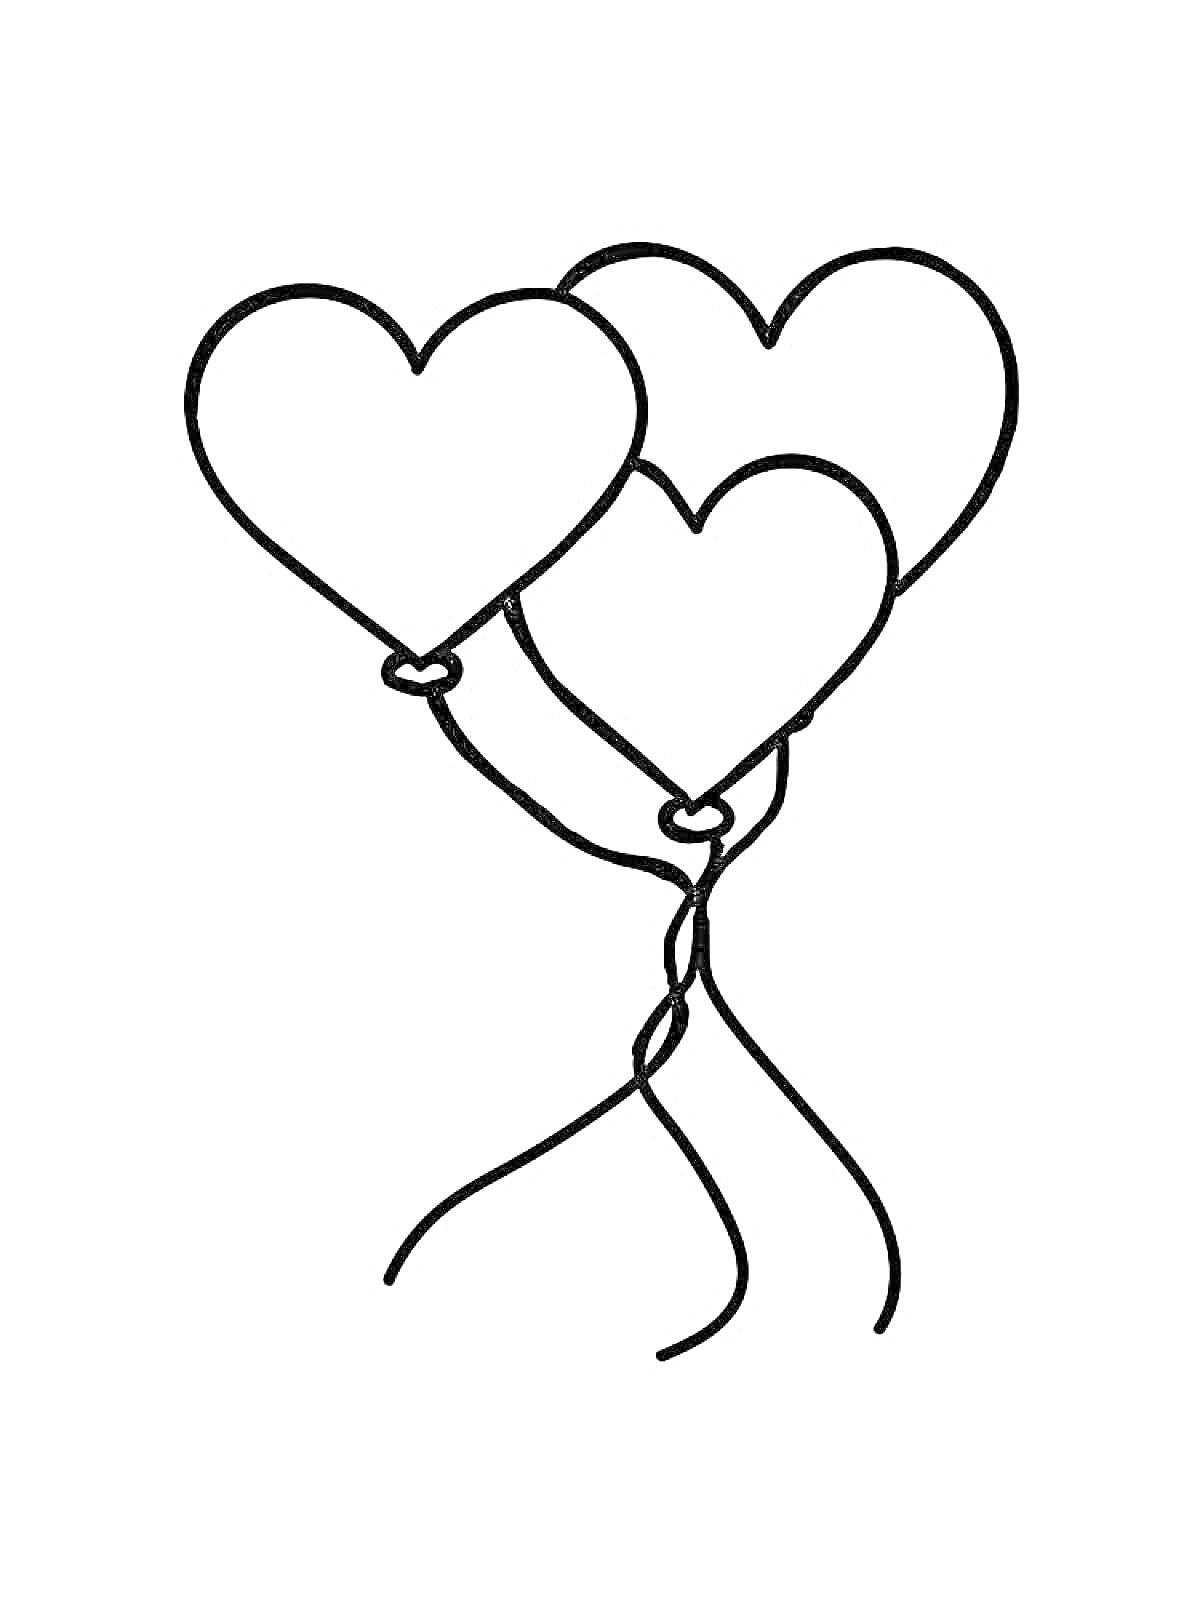 Раскраска Воздушные шарики в форме сердец (три шарика, связанные вместе)